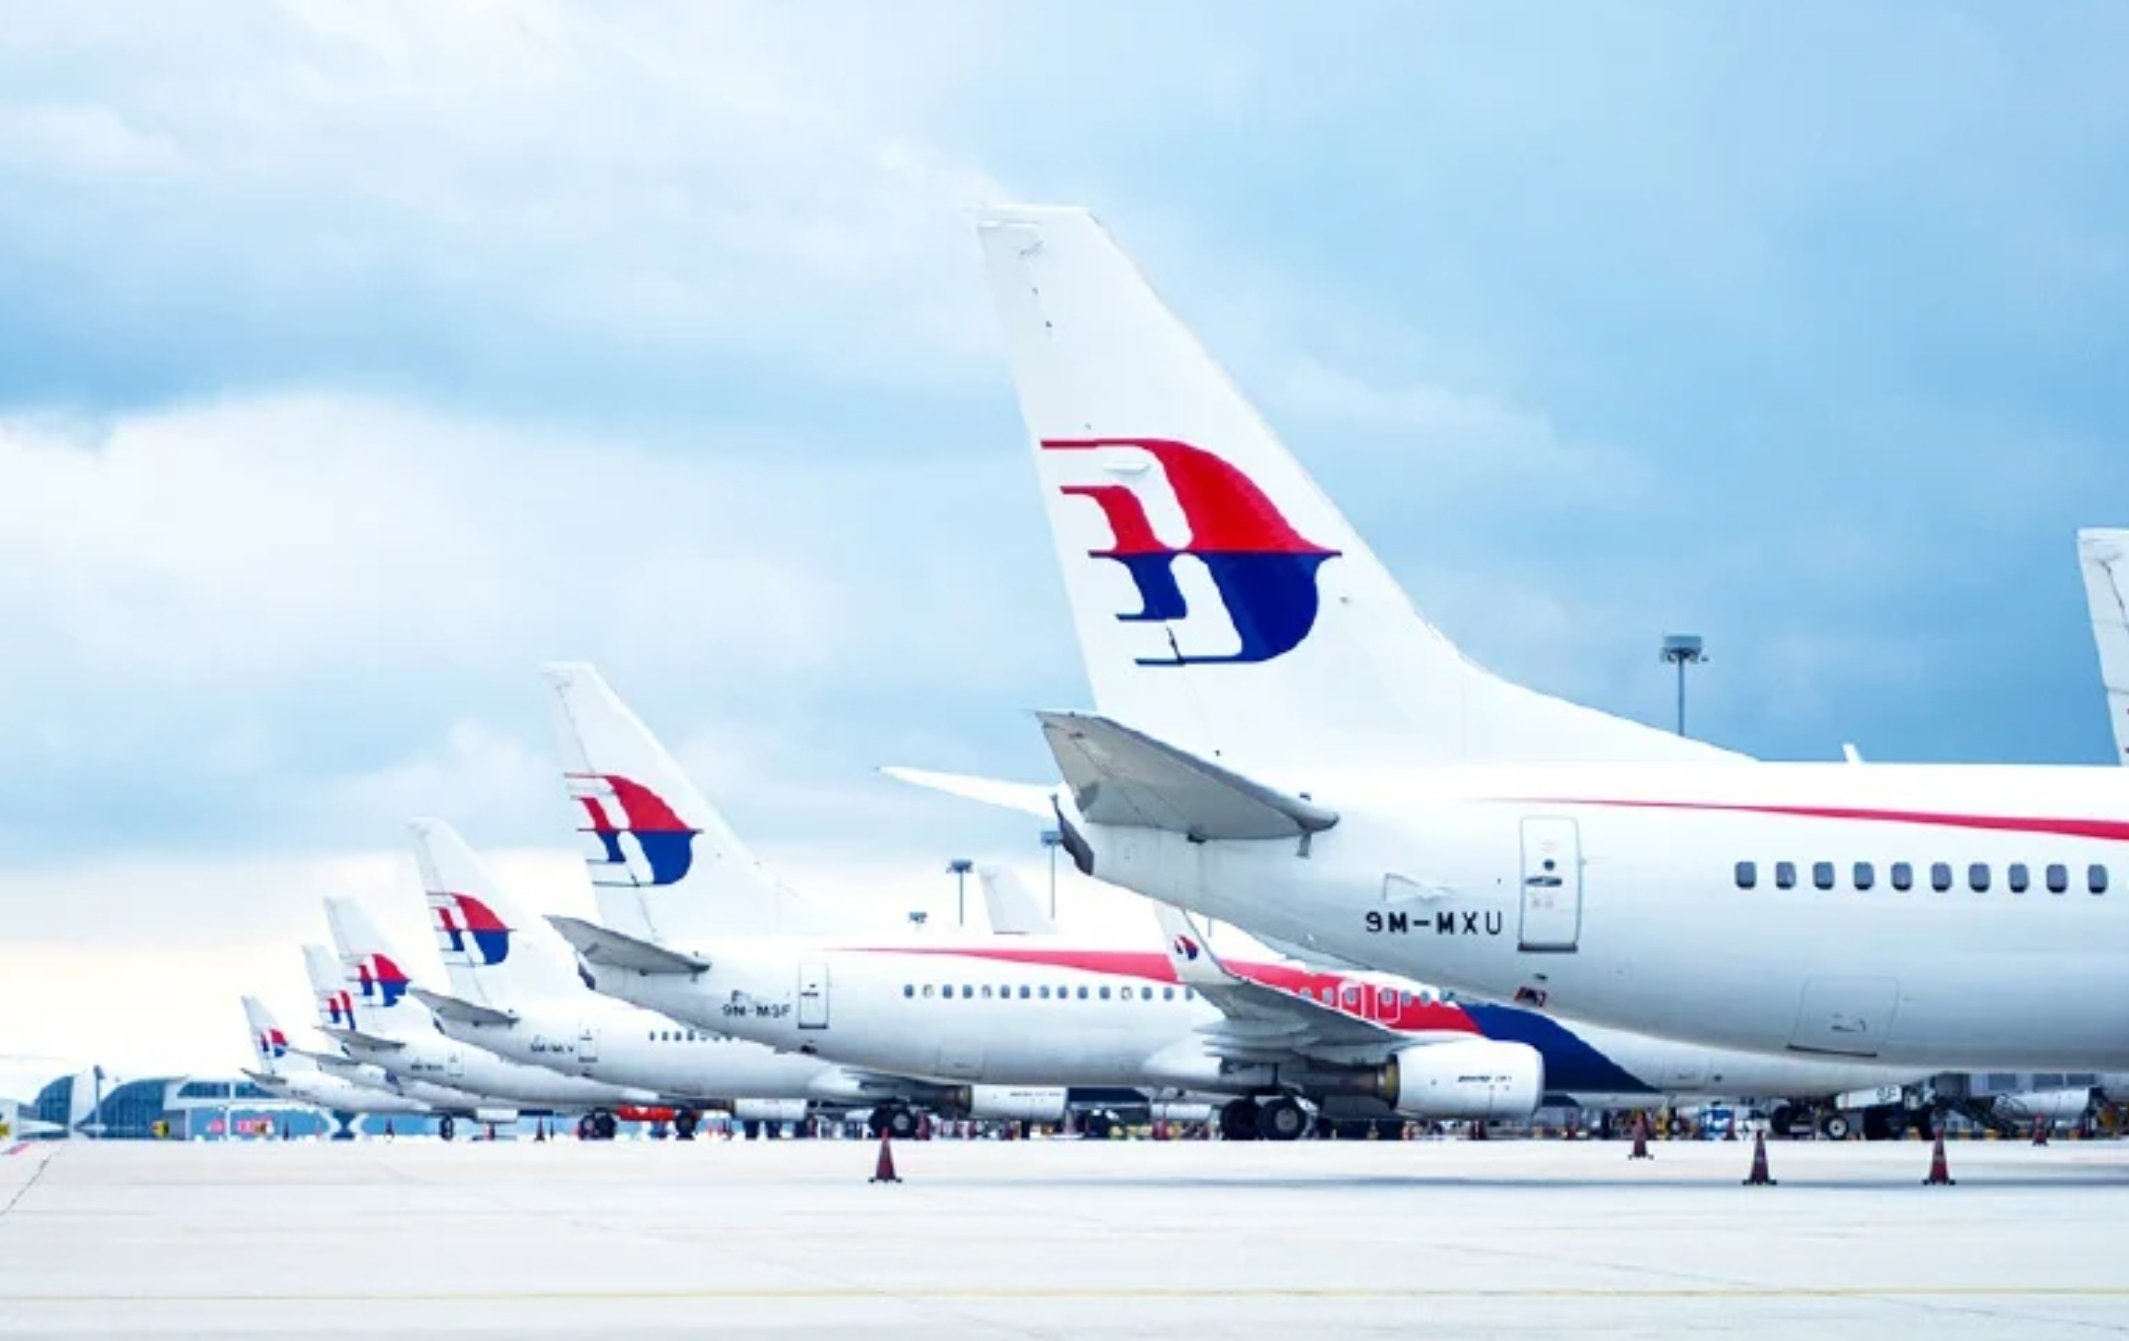 Malaysia Airlines Buka Promo Besar-besaran Terbang ke Bandara Kertajati Majalengka, Ada Shuttle Gratis